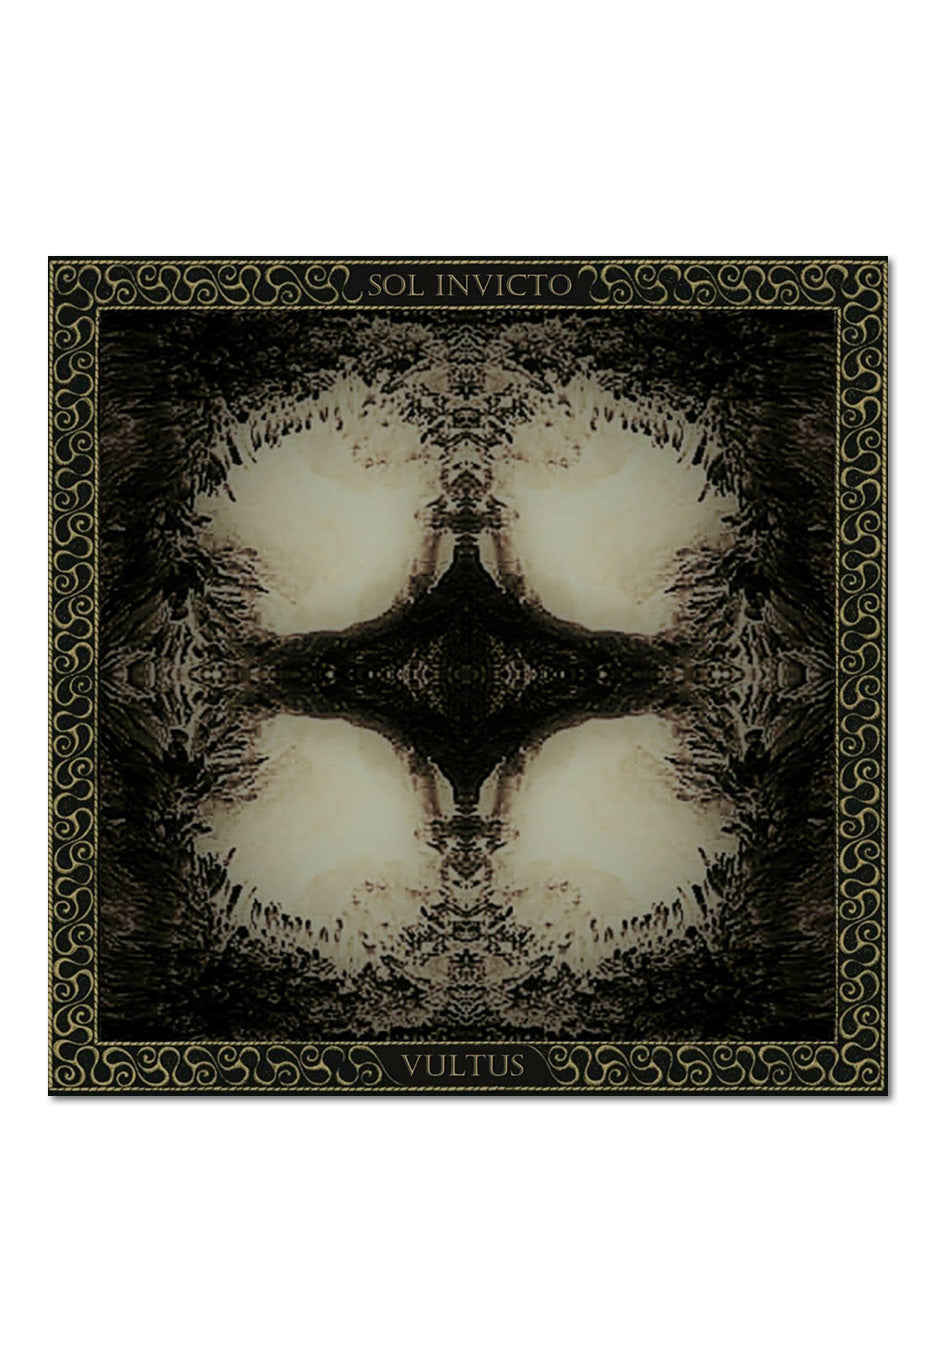 Vultus - Sol Invicto - CD